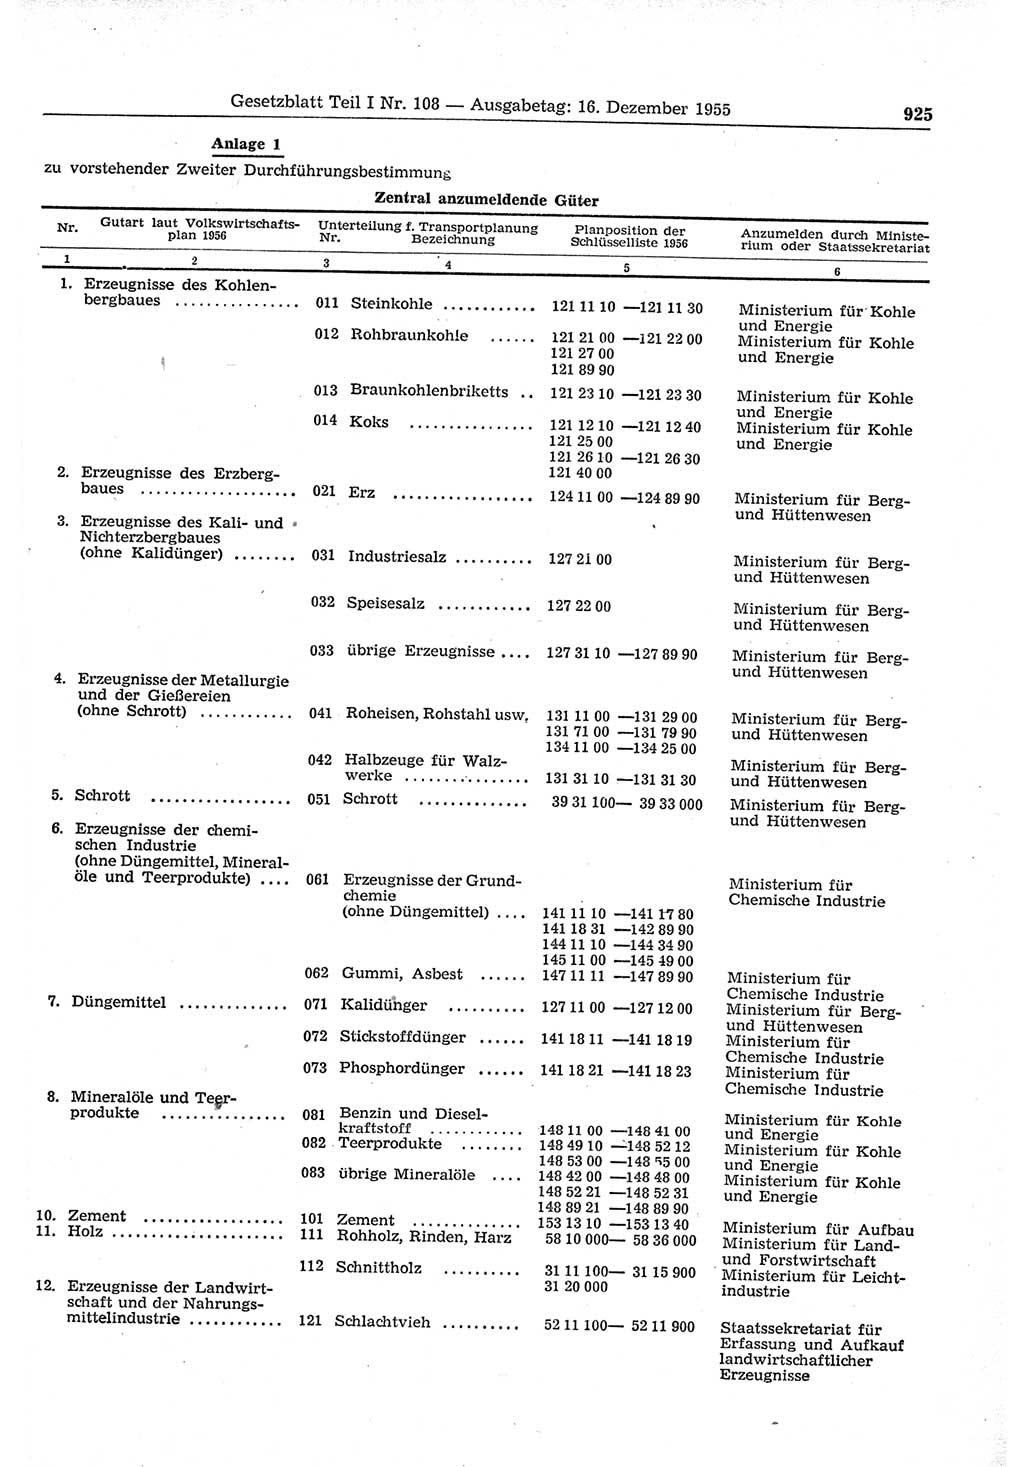 Gesetzblatt (GBl.) der Deutschen Demokratischen Republik (DDR) Teil Ⅰ 1955, Seite 925 (GBl. DDR Ⅰ 1955, S. 925)